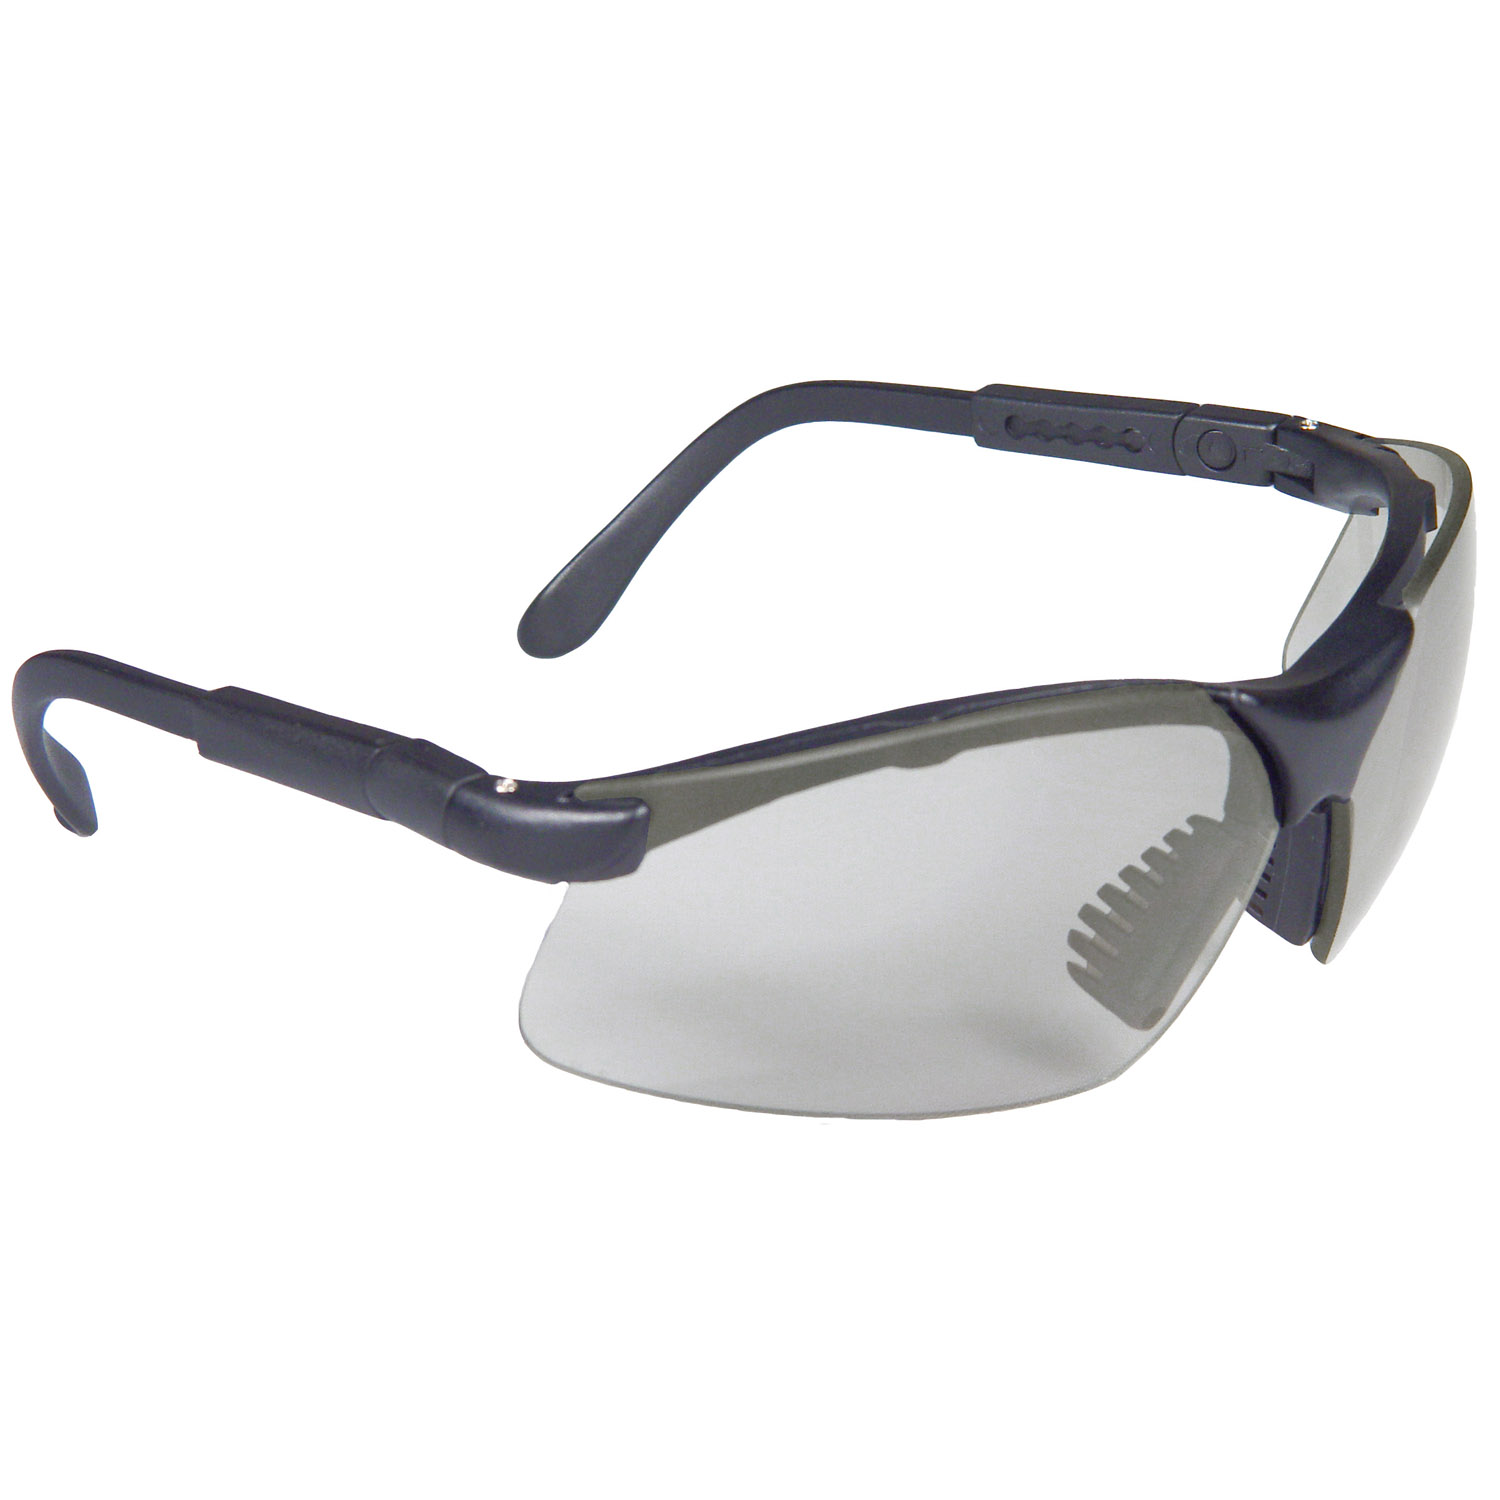 Revelation™ Safety Eyewear - Black Frame - Indoor/Outdoor Lens